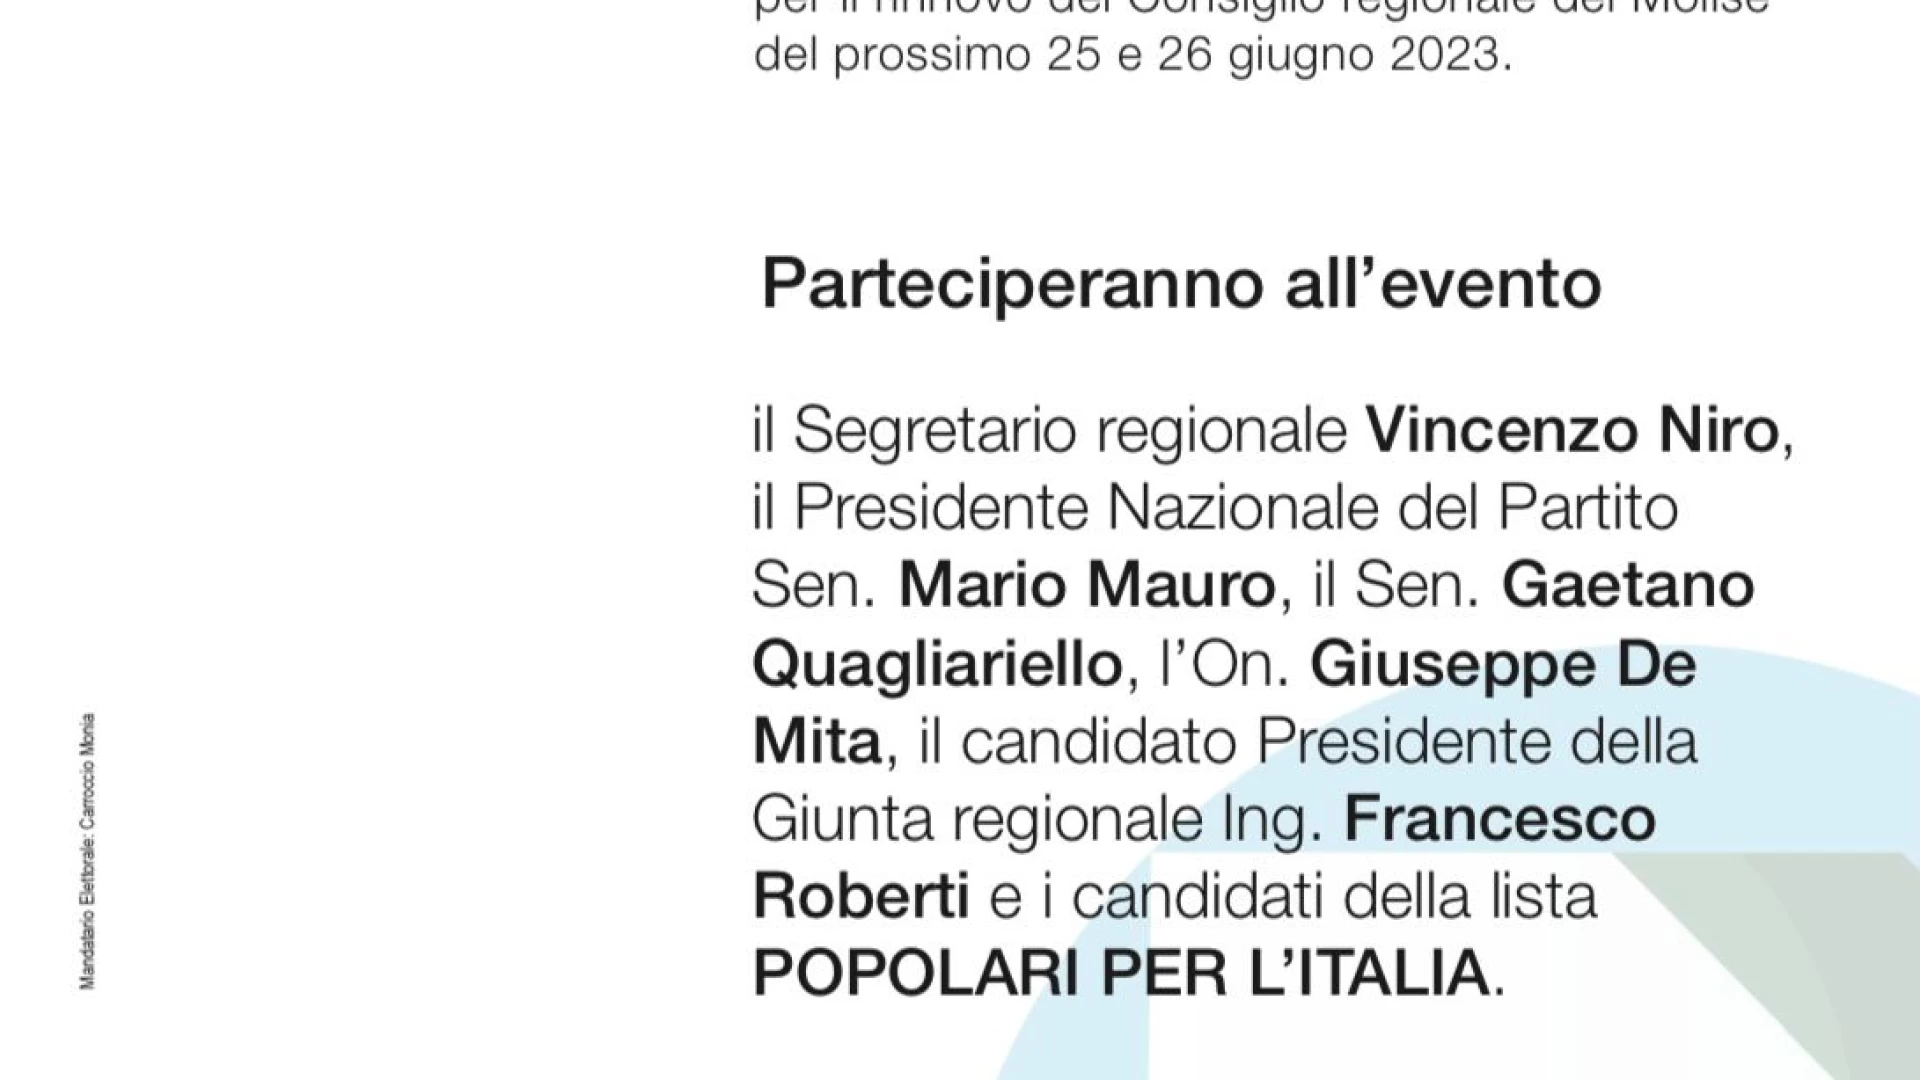 Regionali: mercoledì 7 giugno si presenta la lista dei “Popolari per l’Italia”. Evento previsto presso il ristorante “La Piana dei Mulini” a Colle D’Anchise.